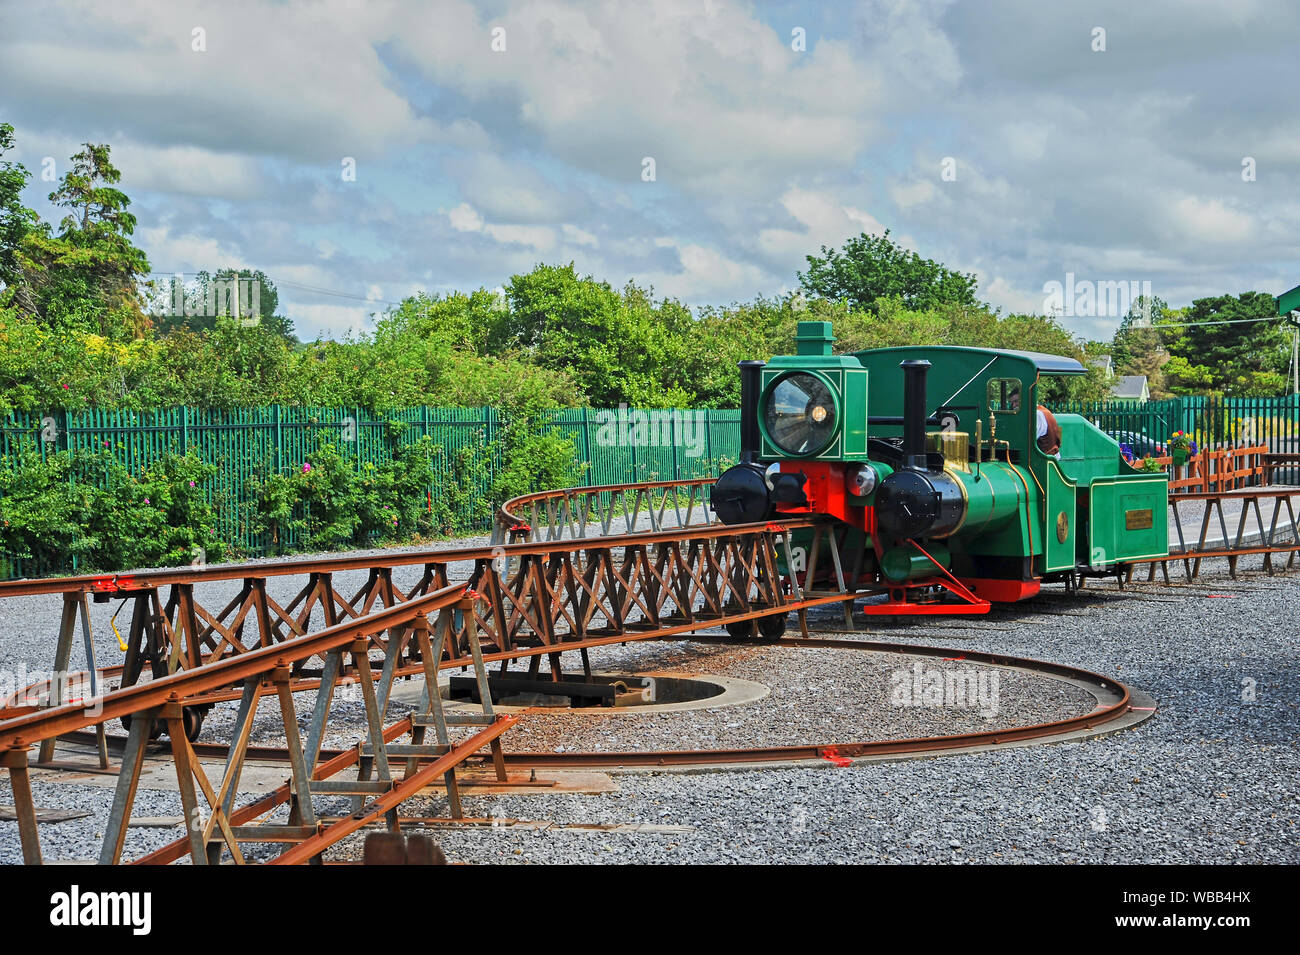 La Monorotaia Lartigue in Listowel, nella contea di Kerry, Repubblica di Irlanda, è un unico sistema ferroviario costruito dal francese Charles Lartigue. Foto Stock